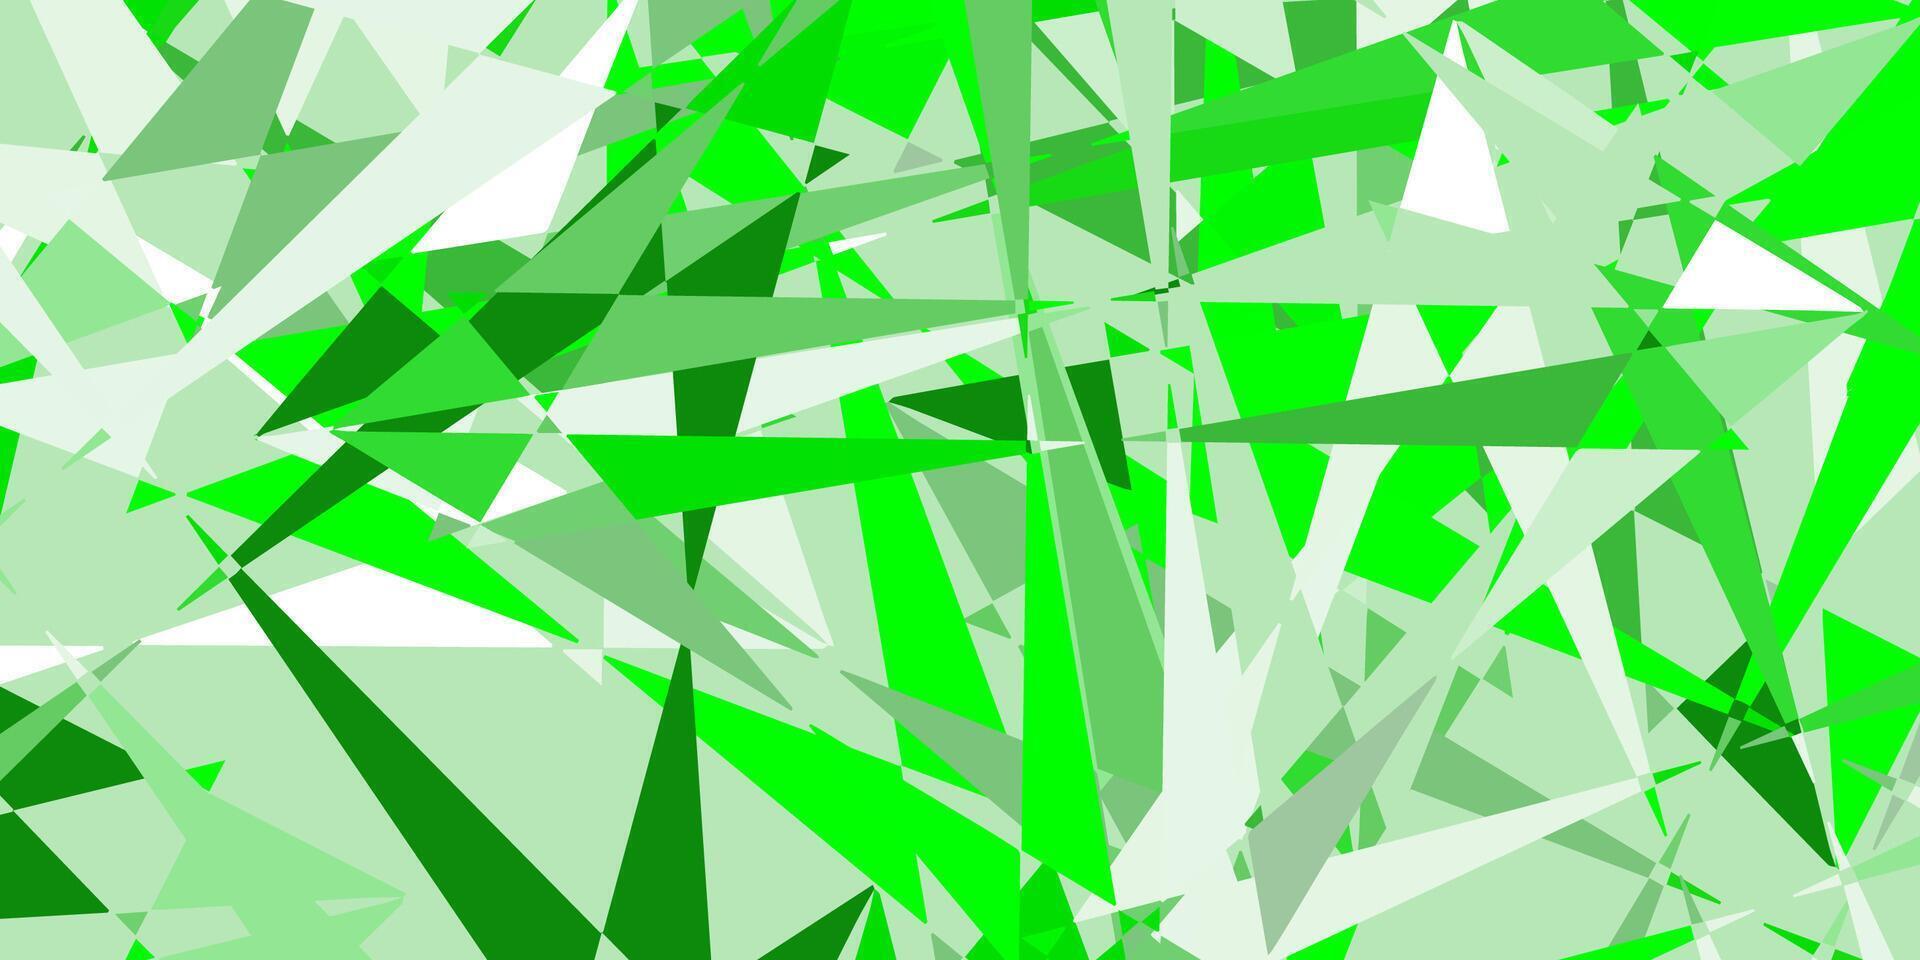 ljusgrön, gul vektorstruktur med slumpmässiga trianglar. vektor